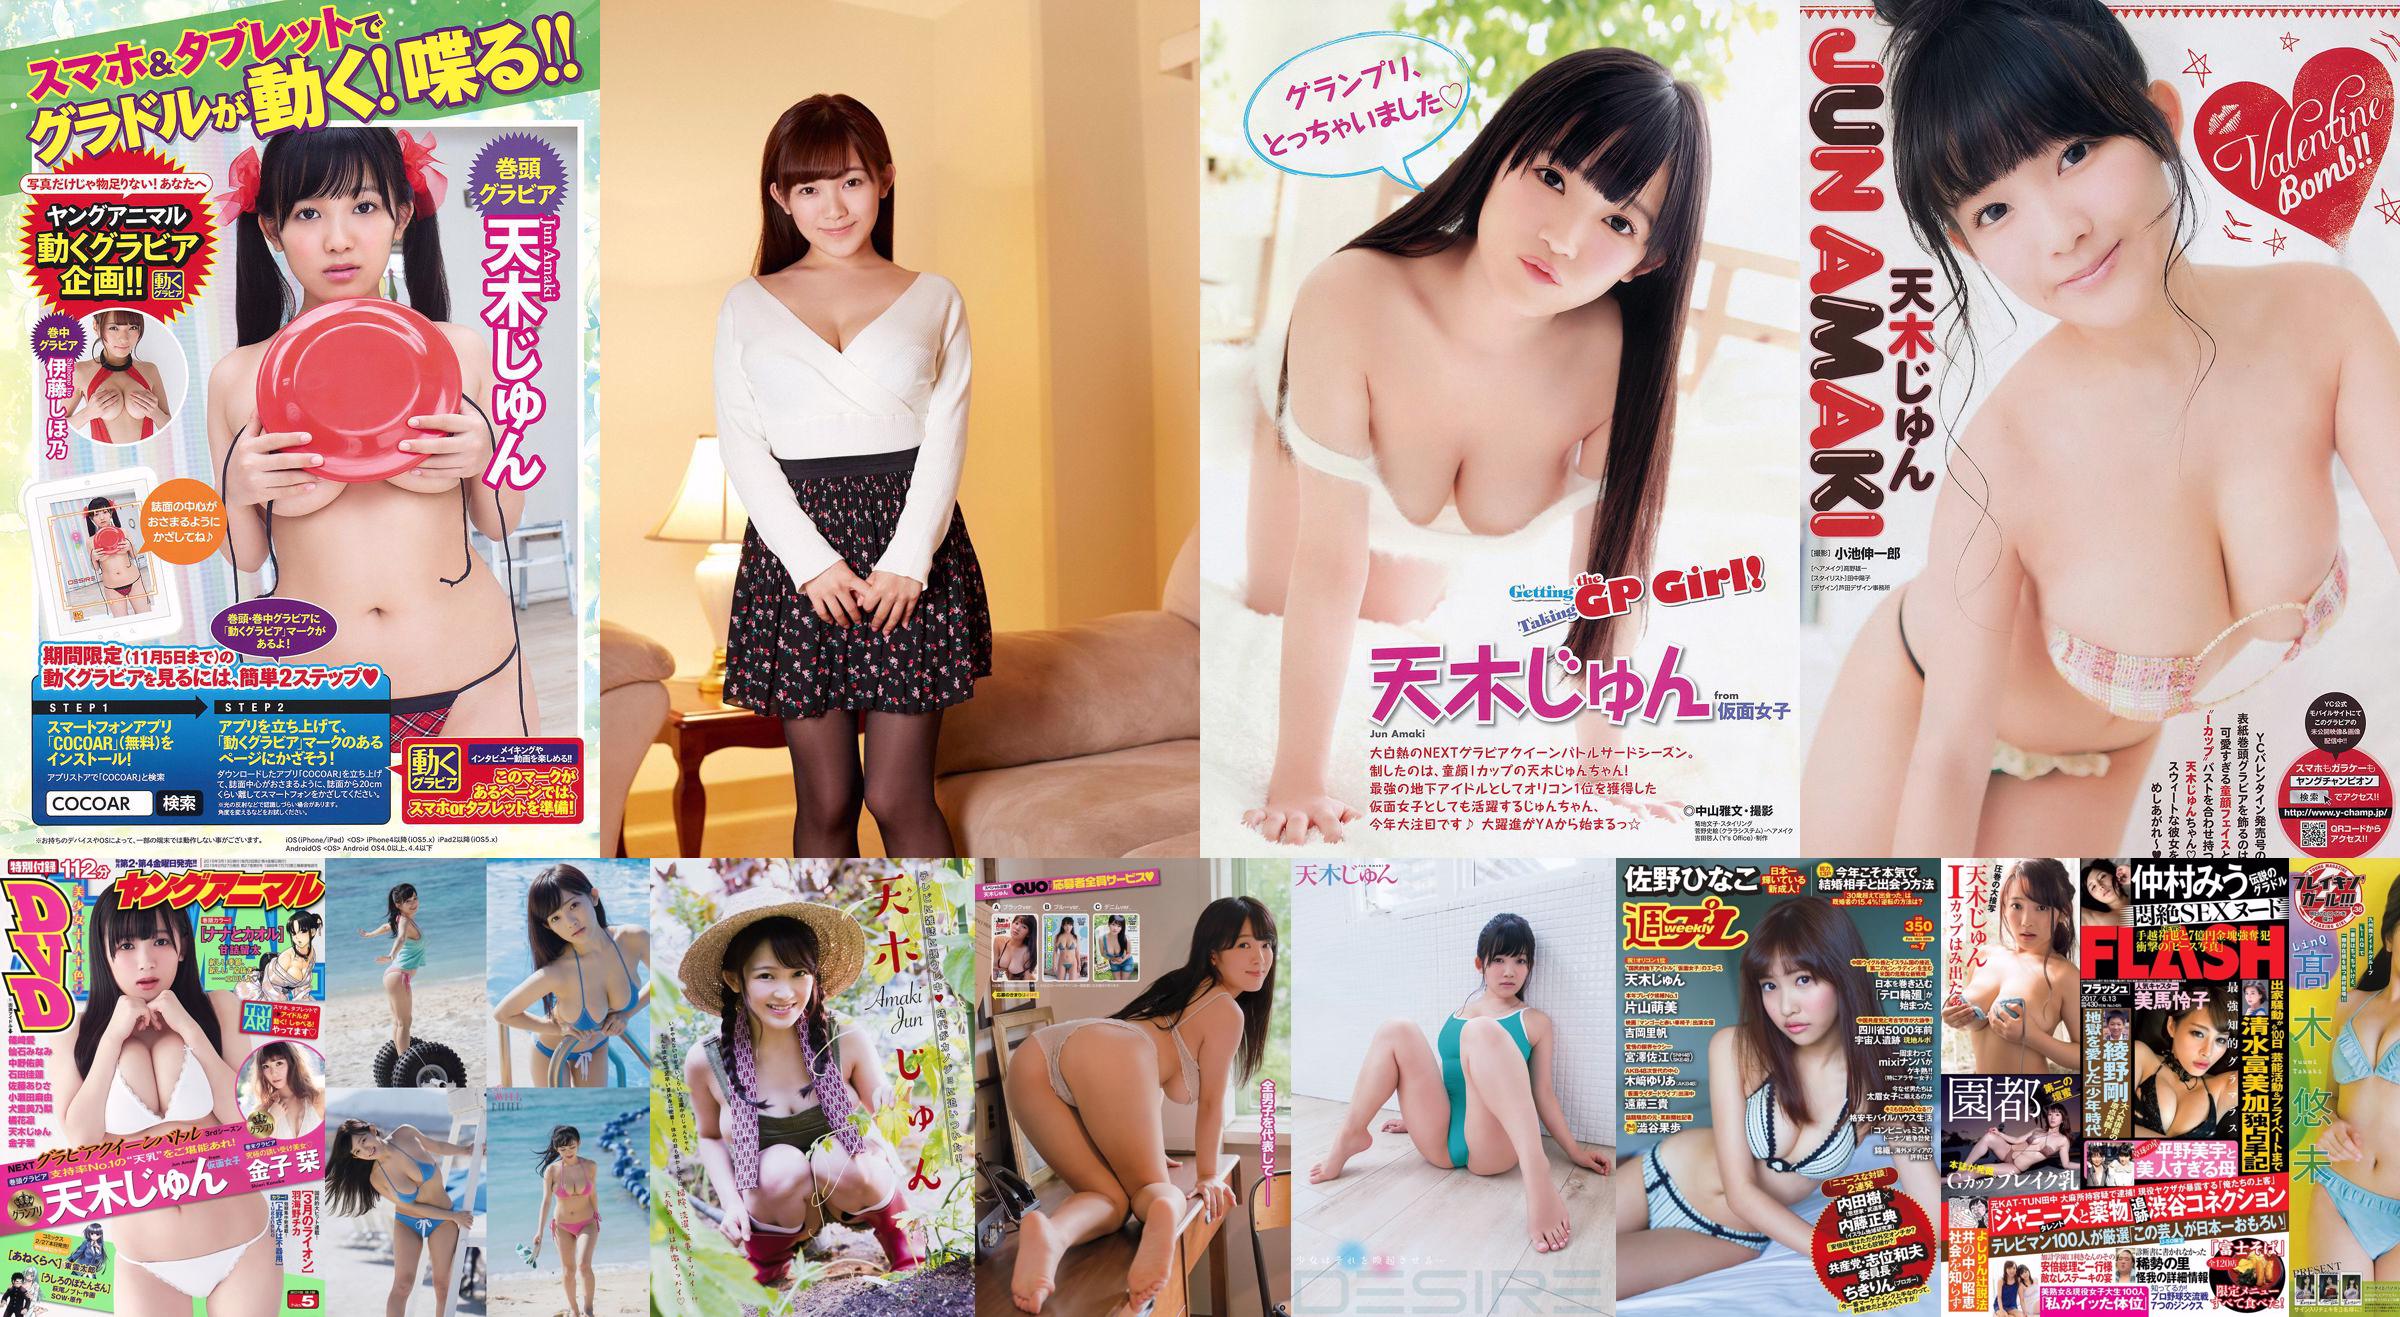 [Cosdoki] Rika Takahashi Rika Takahashi takahashirika_pic_sexyjk1 No.08cf5f Trang 1